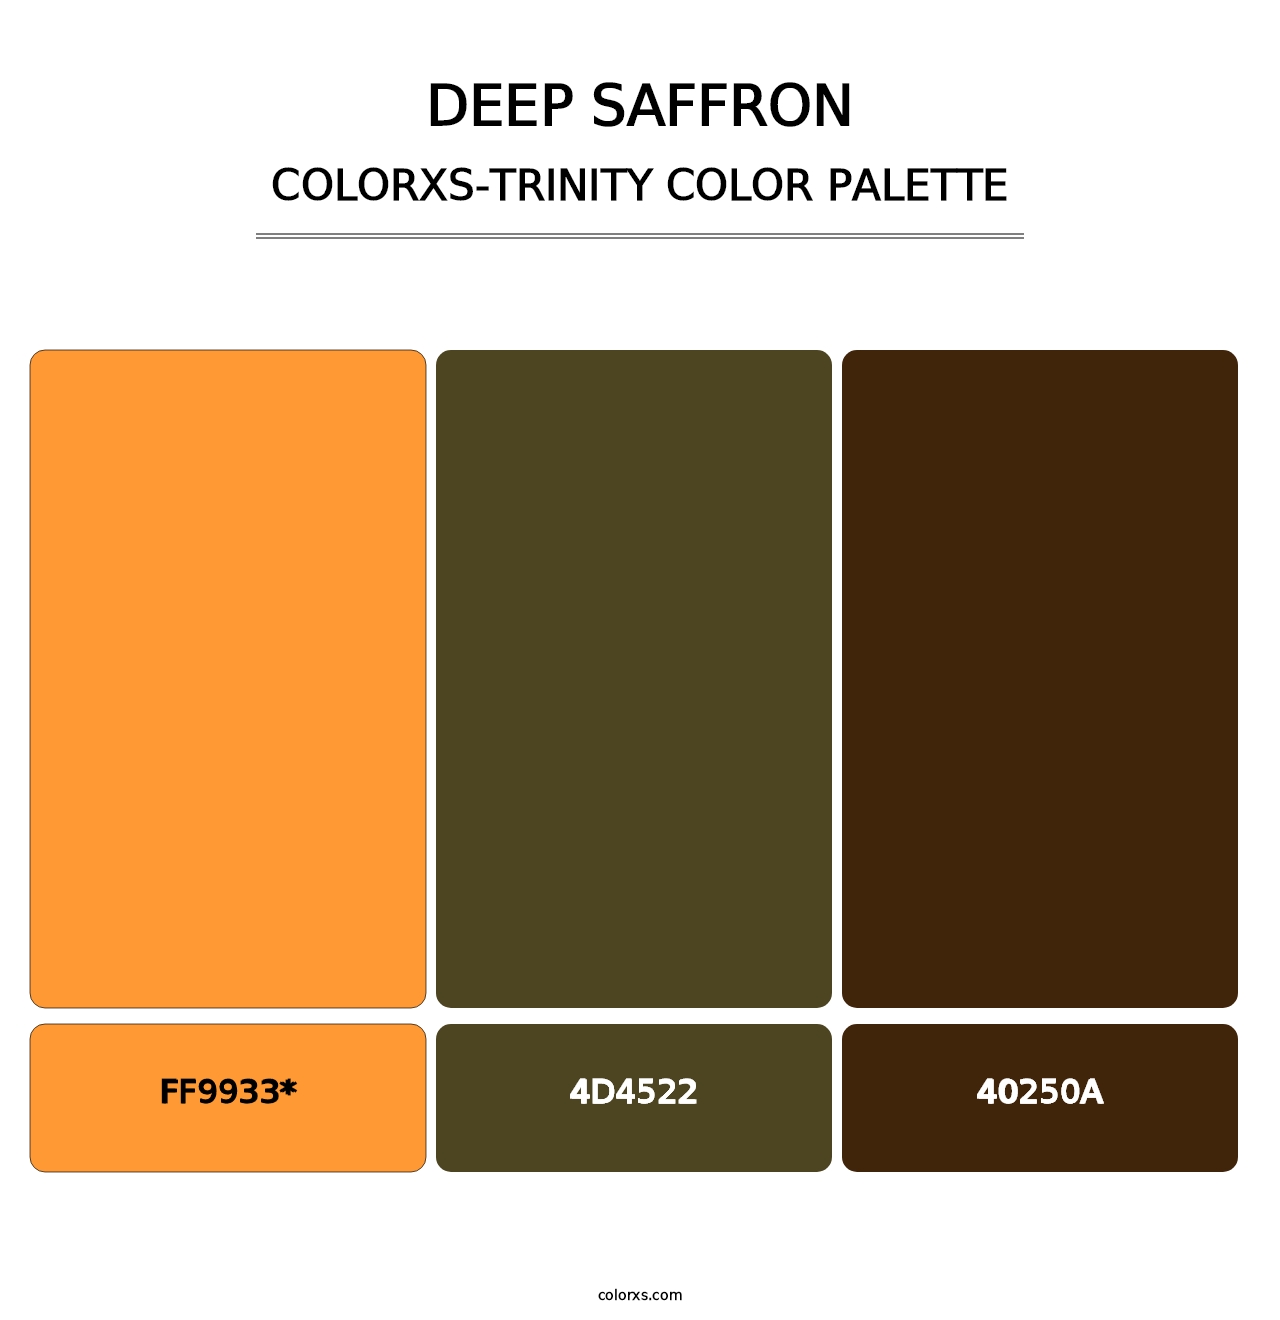 Deep Saffron - Colorxs Trinity Palette